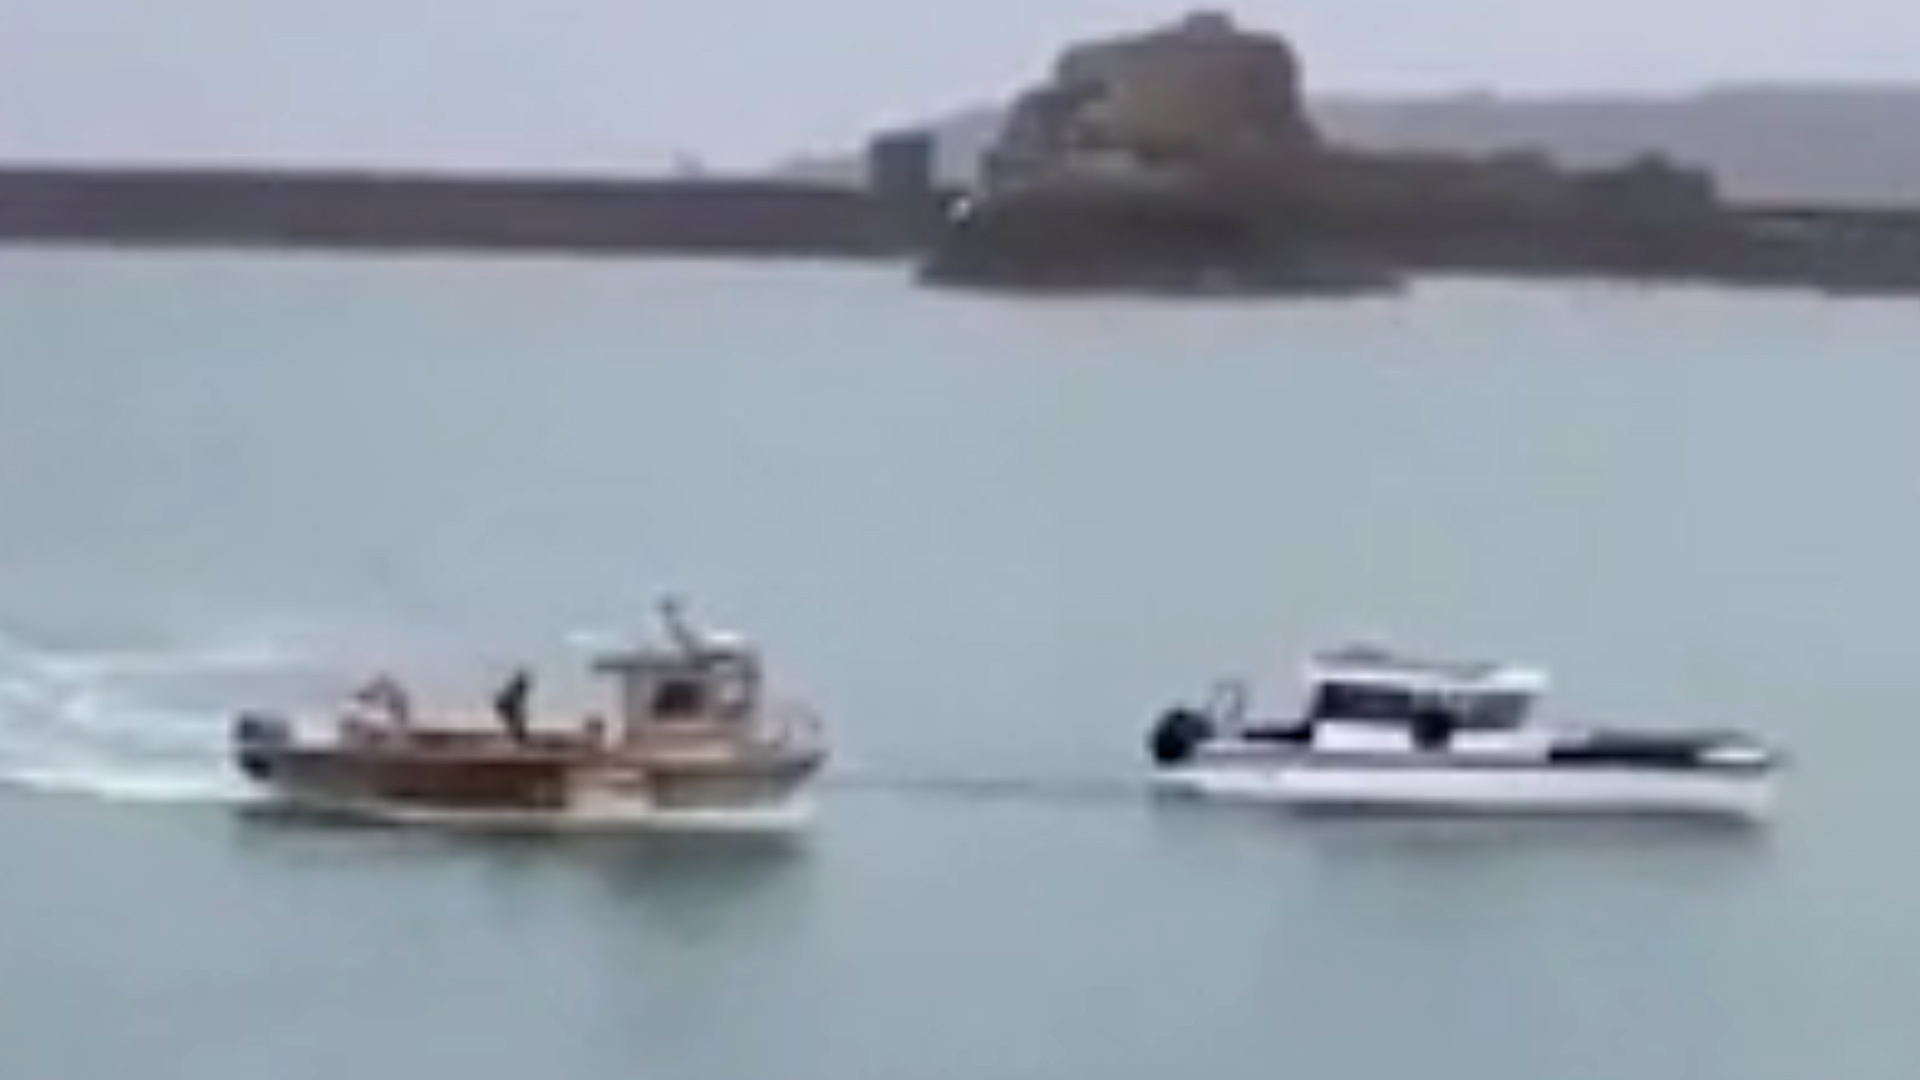 Bloqueo de la isla de Jersey: el momento en que un pesquero francés embistió y persiguió a un barco británico